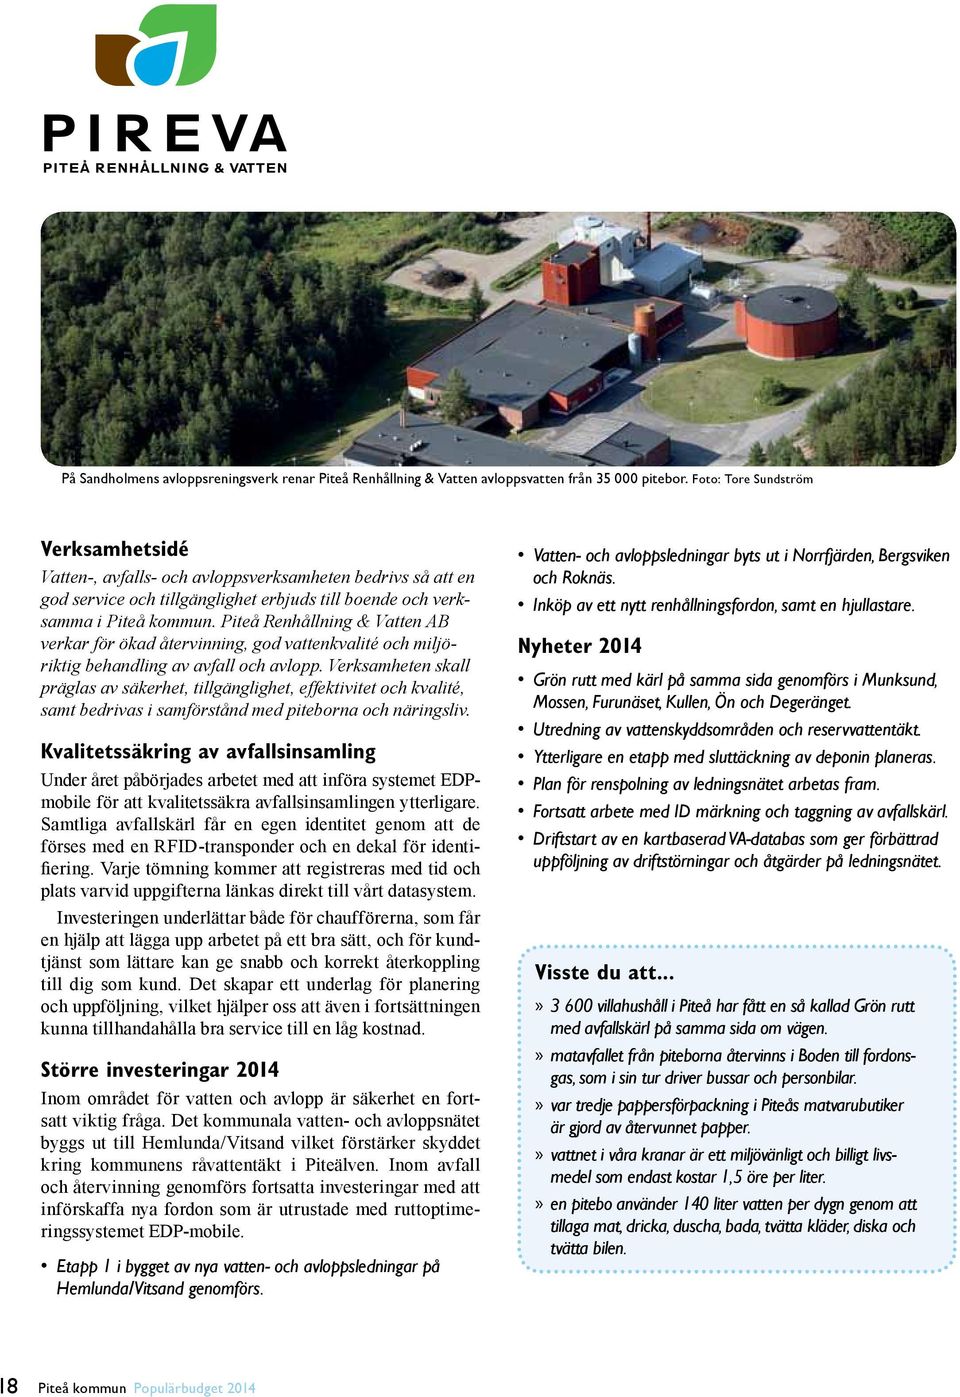 Piteå Renhållning & Vatten AB verkar för ökad återvinning, god vattenkvalité och miljöriktig behandling av avfall och avlopp.